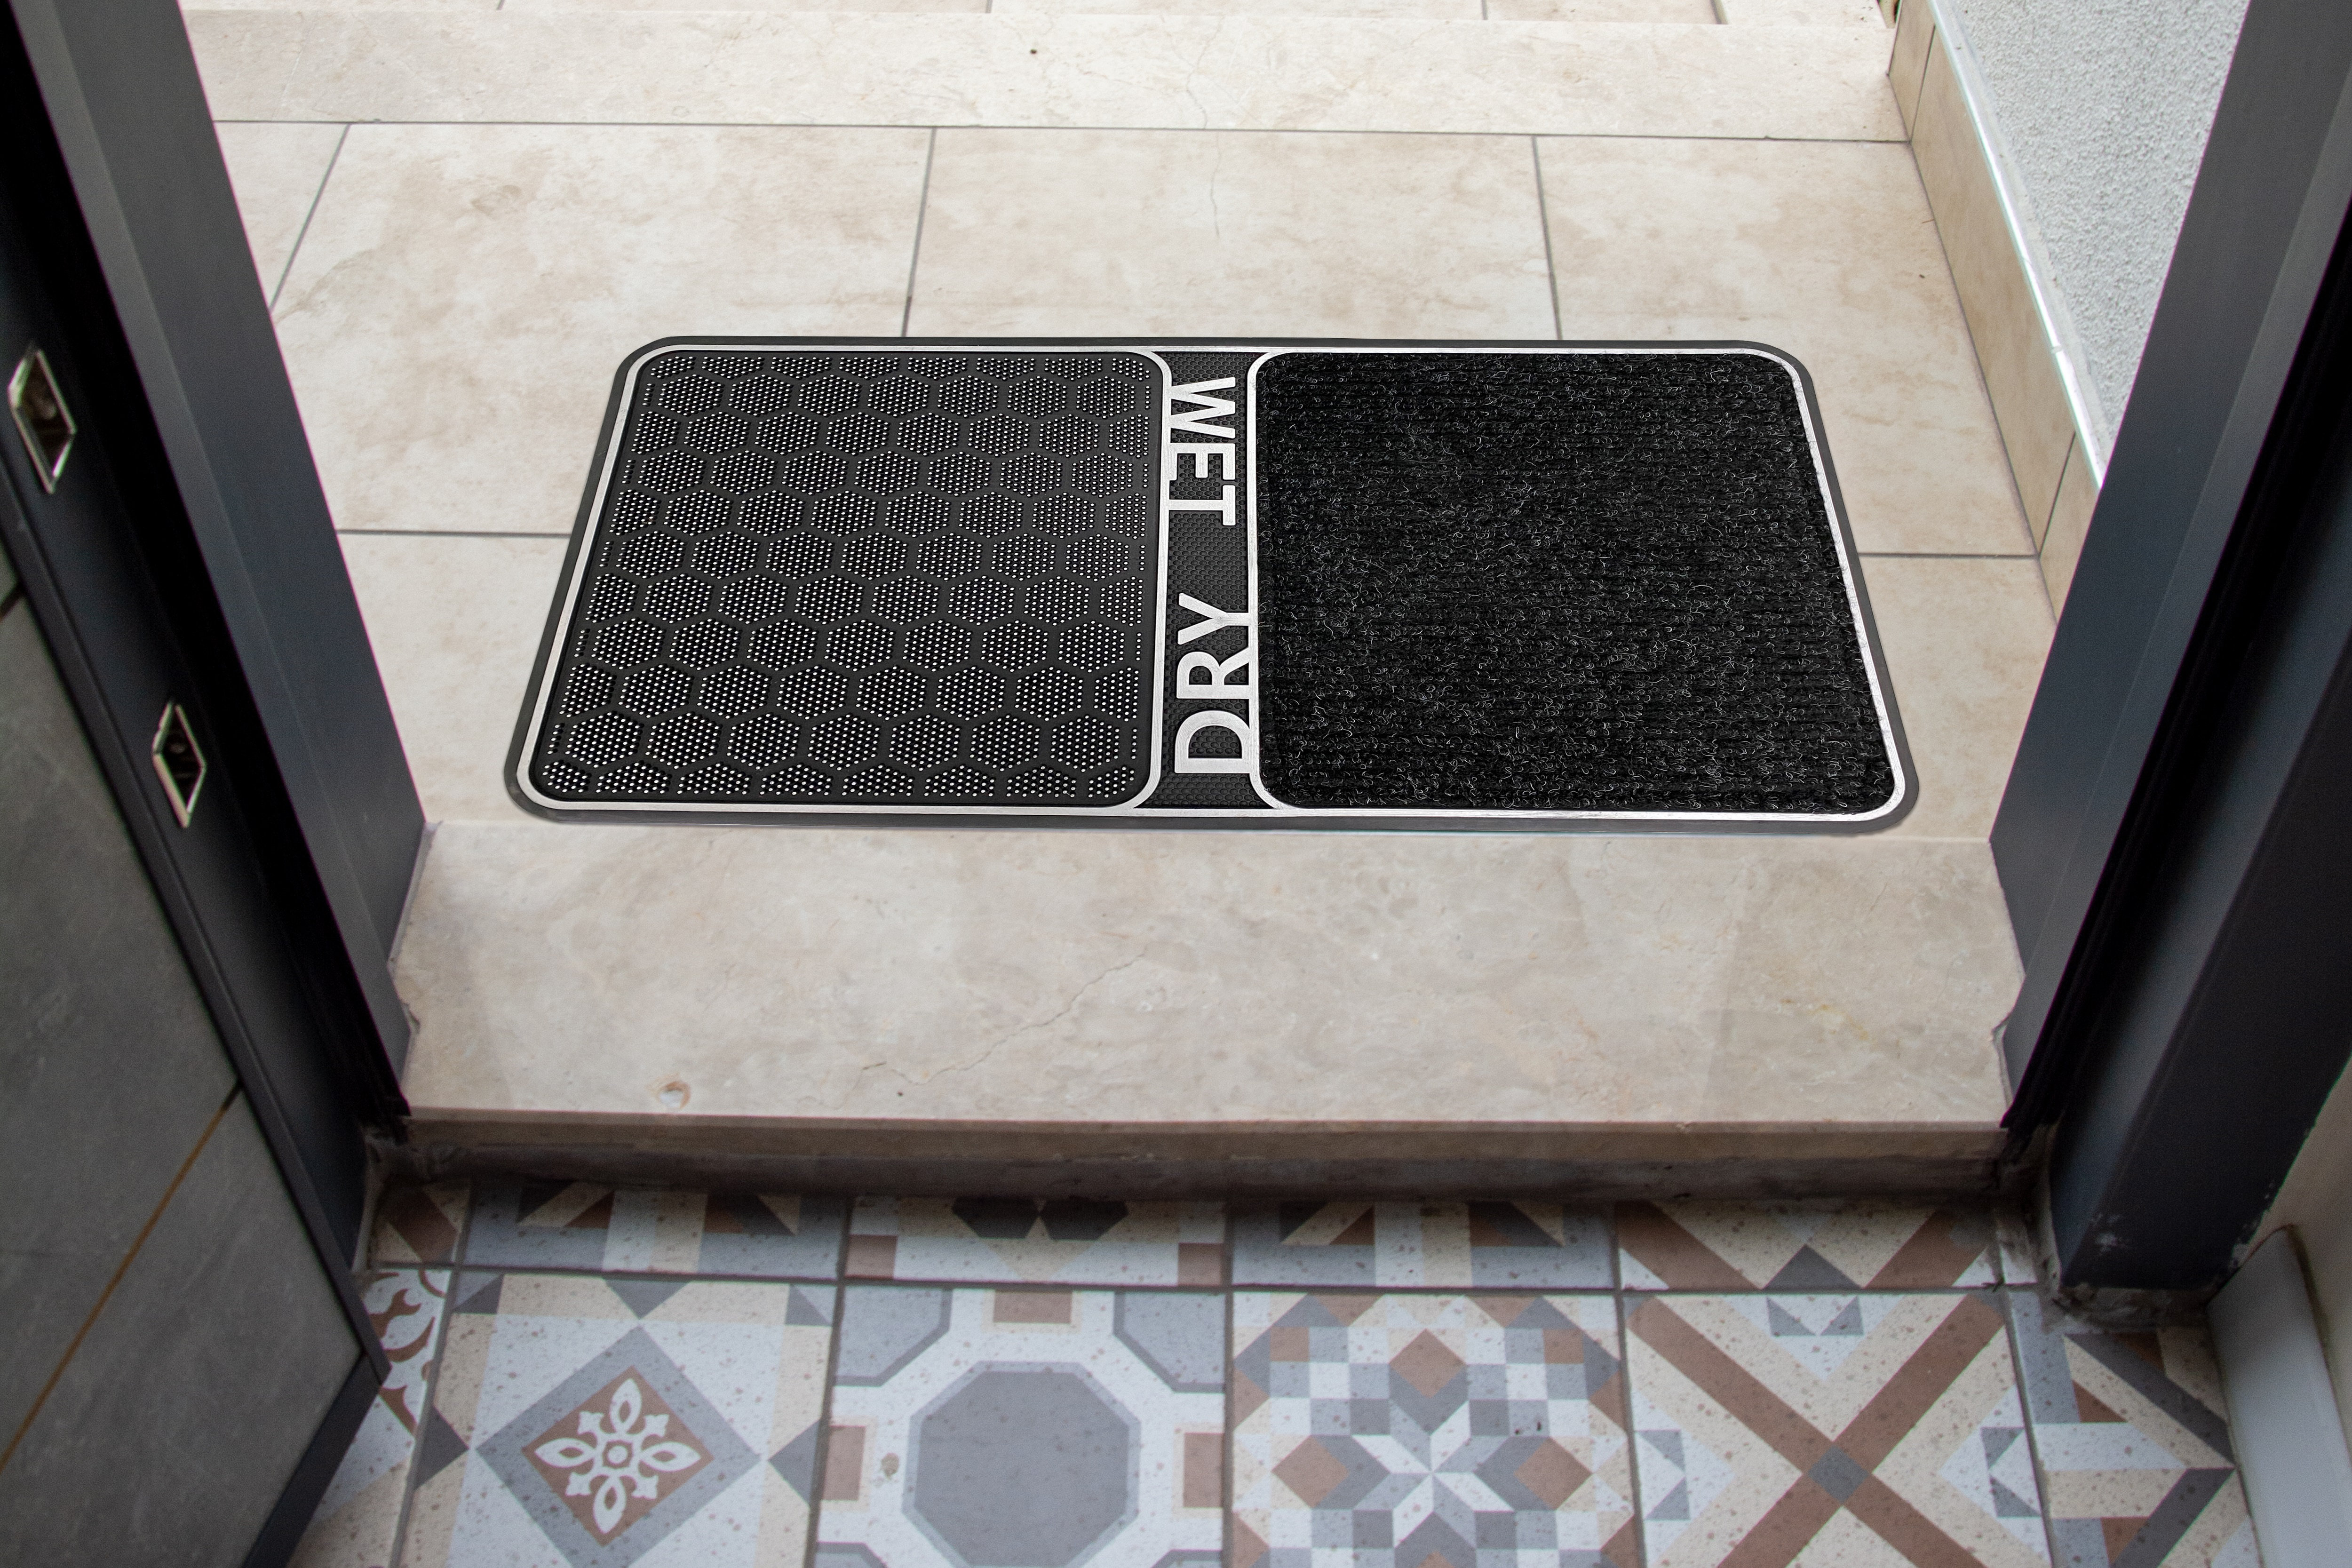 Ebern Designs Extra Large Indoor Outdoor Doormat 32X 48